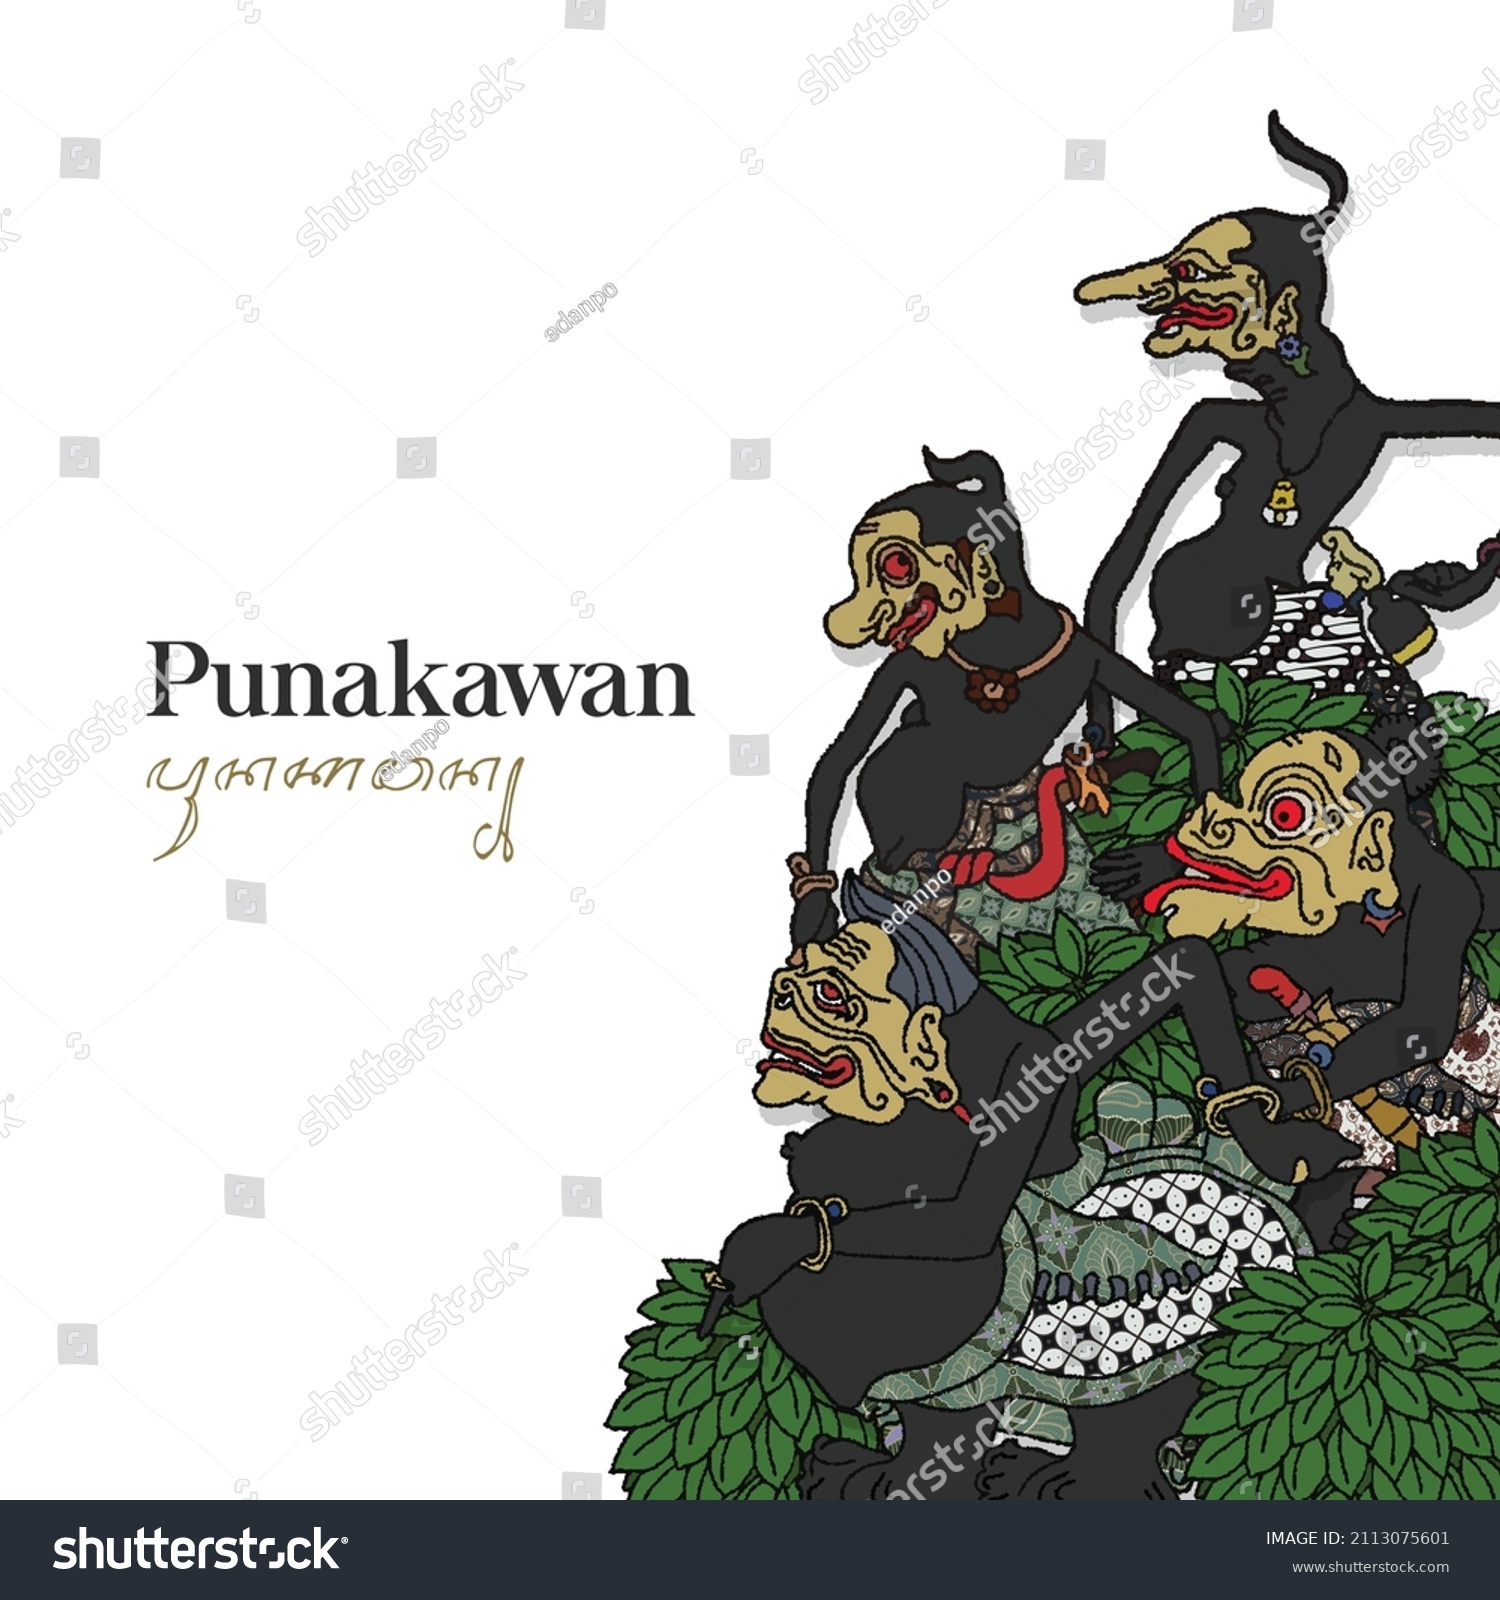 SVG of Punakawan wayang illustration. Hand drawn Indonesian shadow puppet. svg